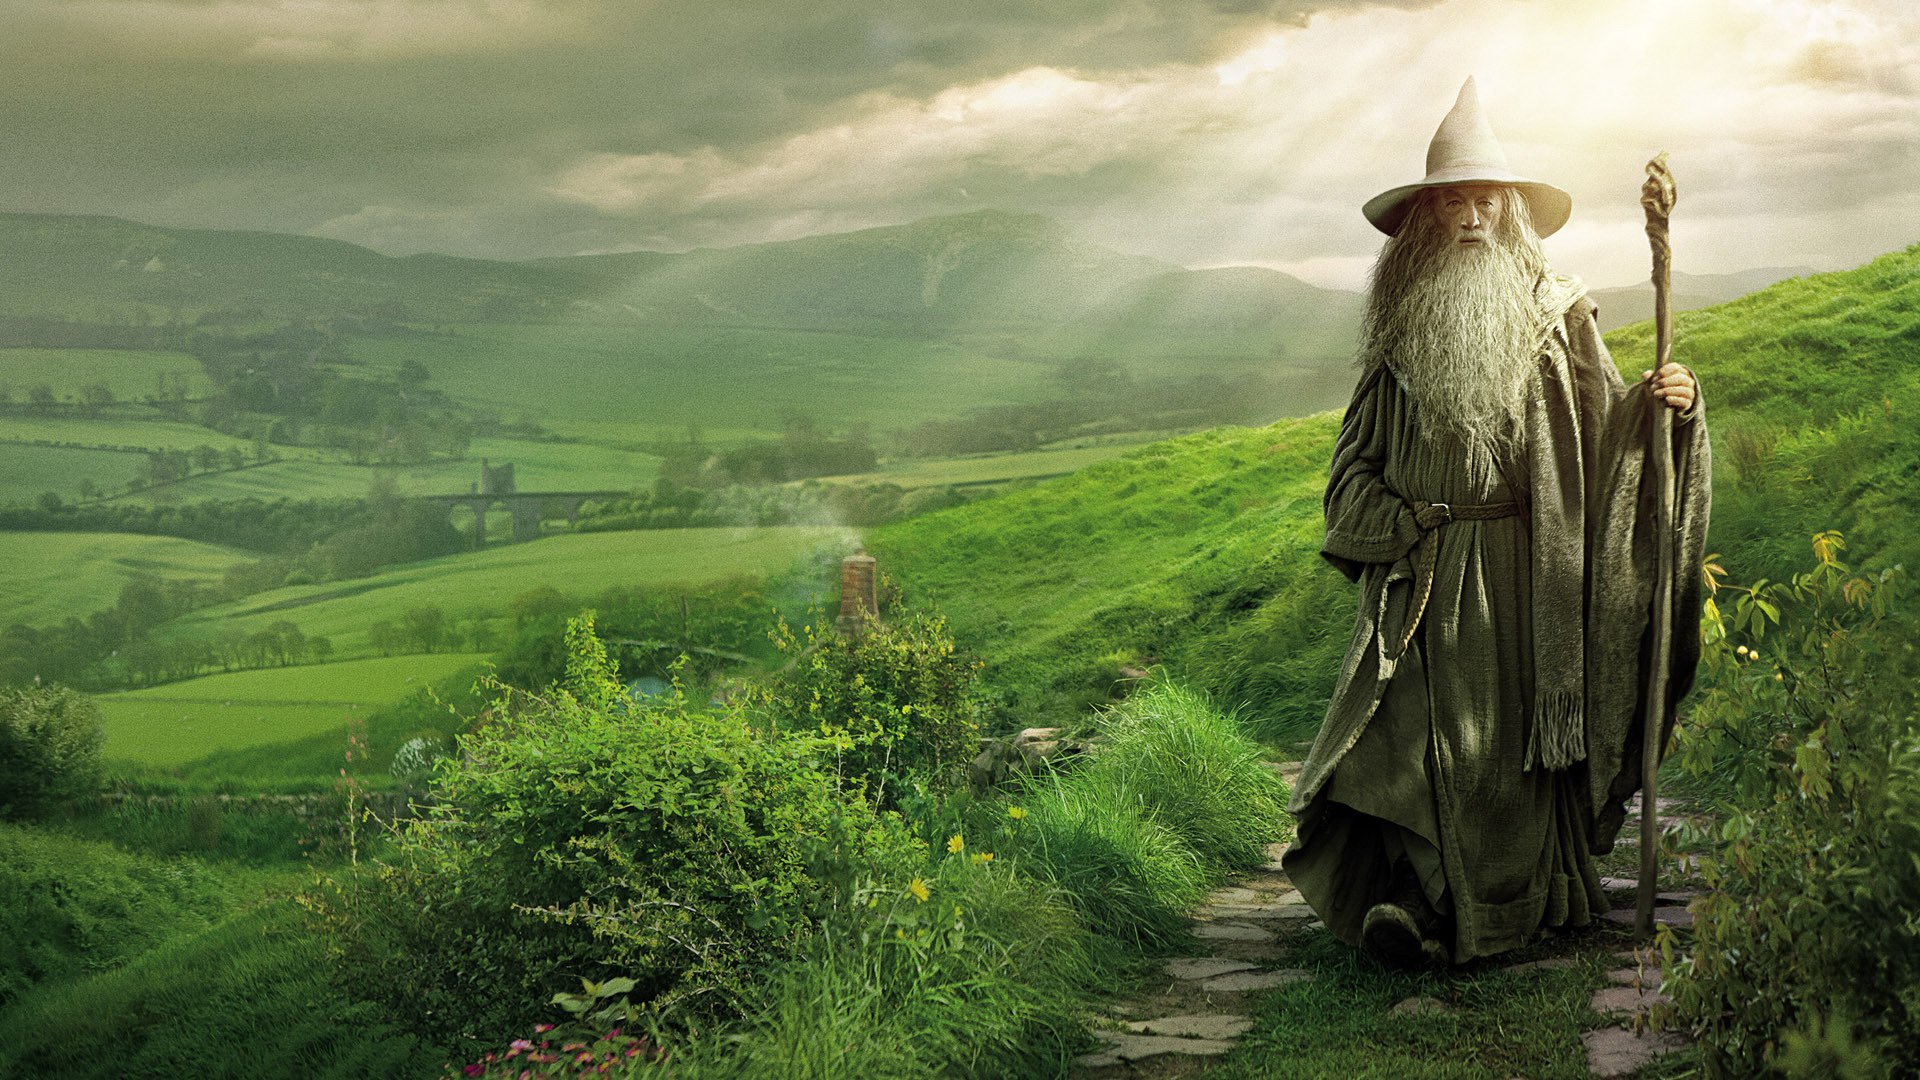 Hobbit: En oväntad resa